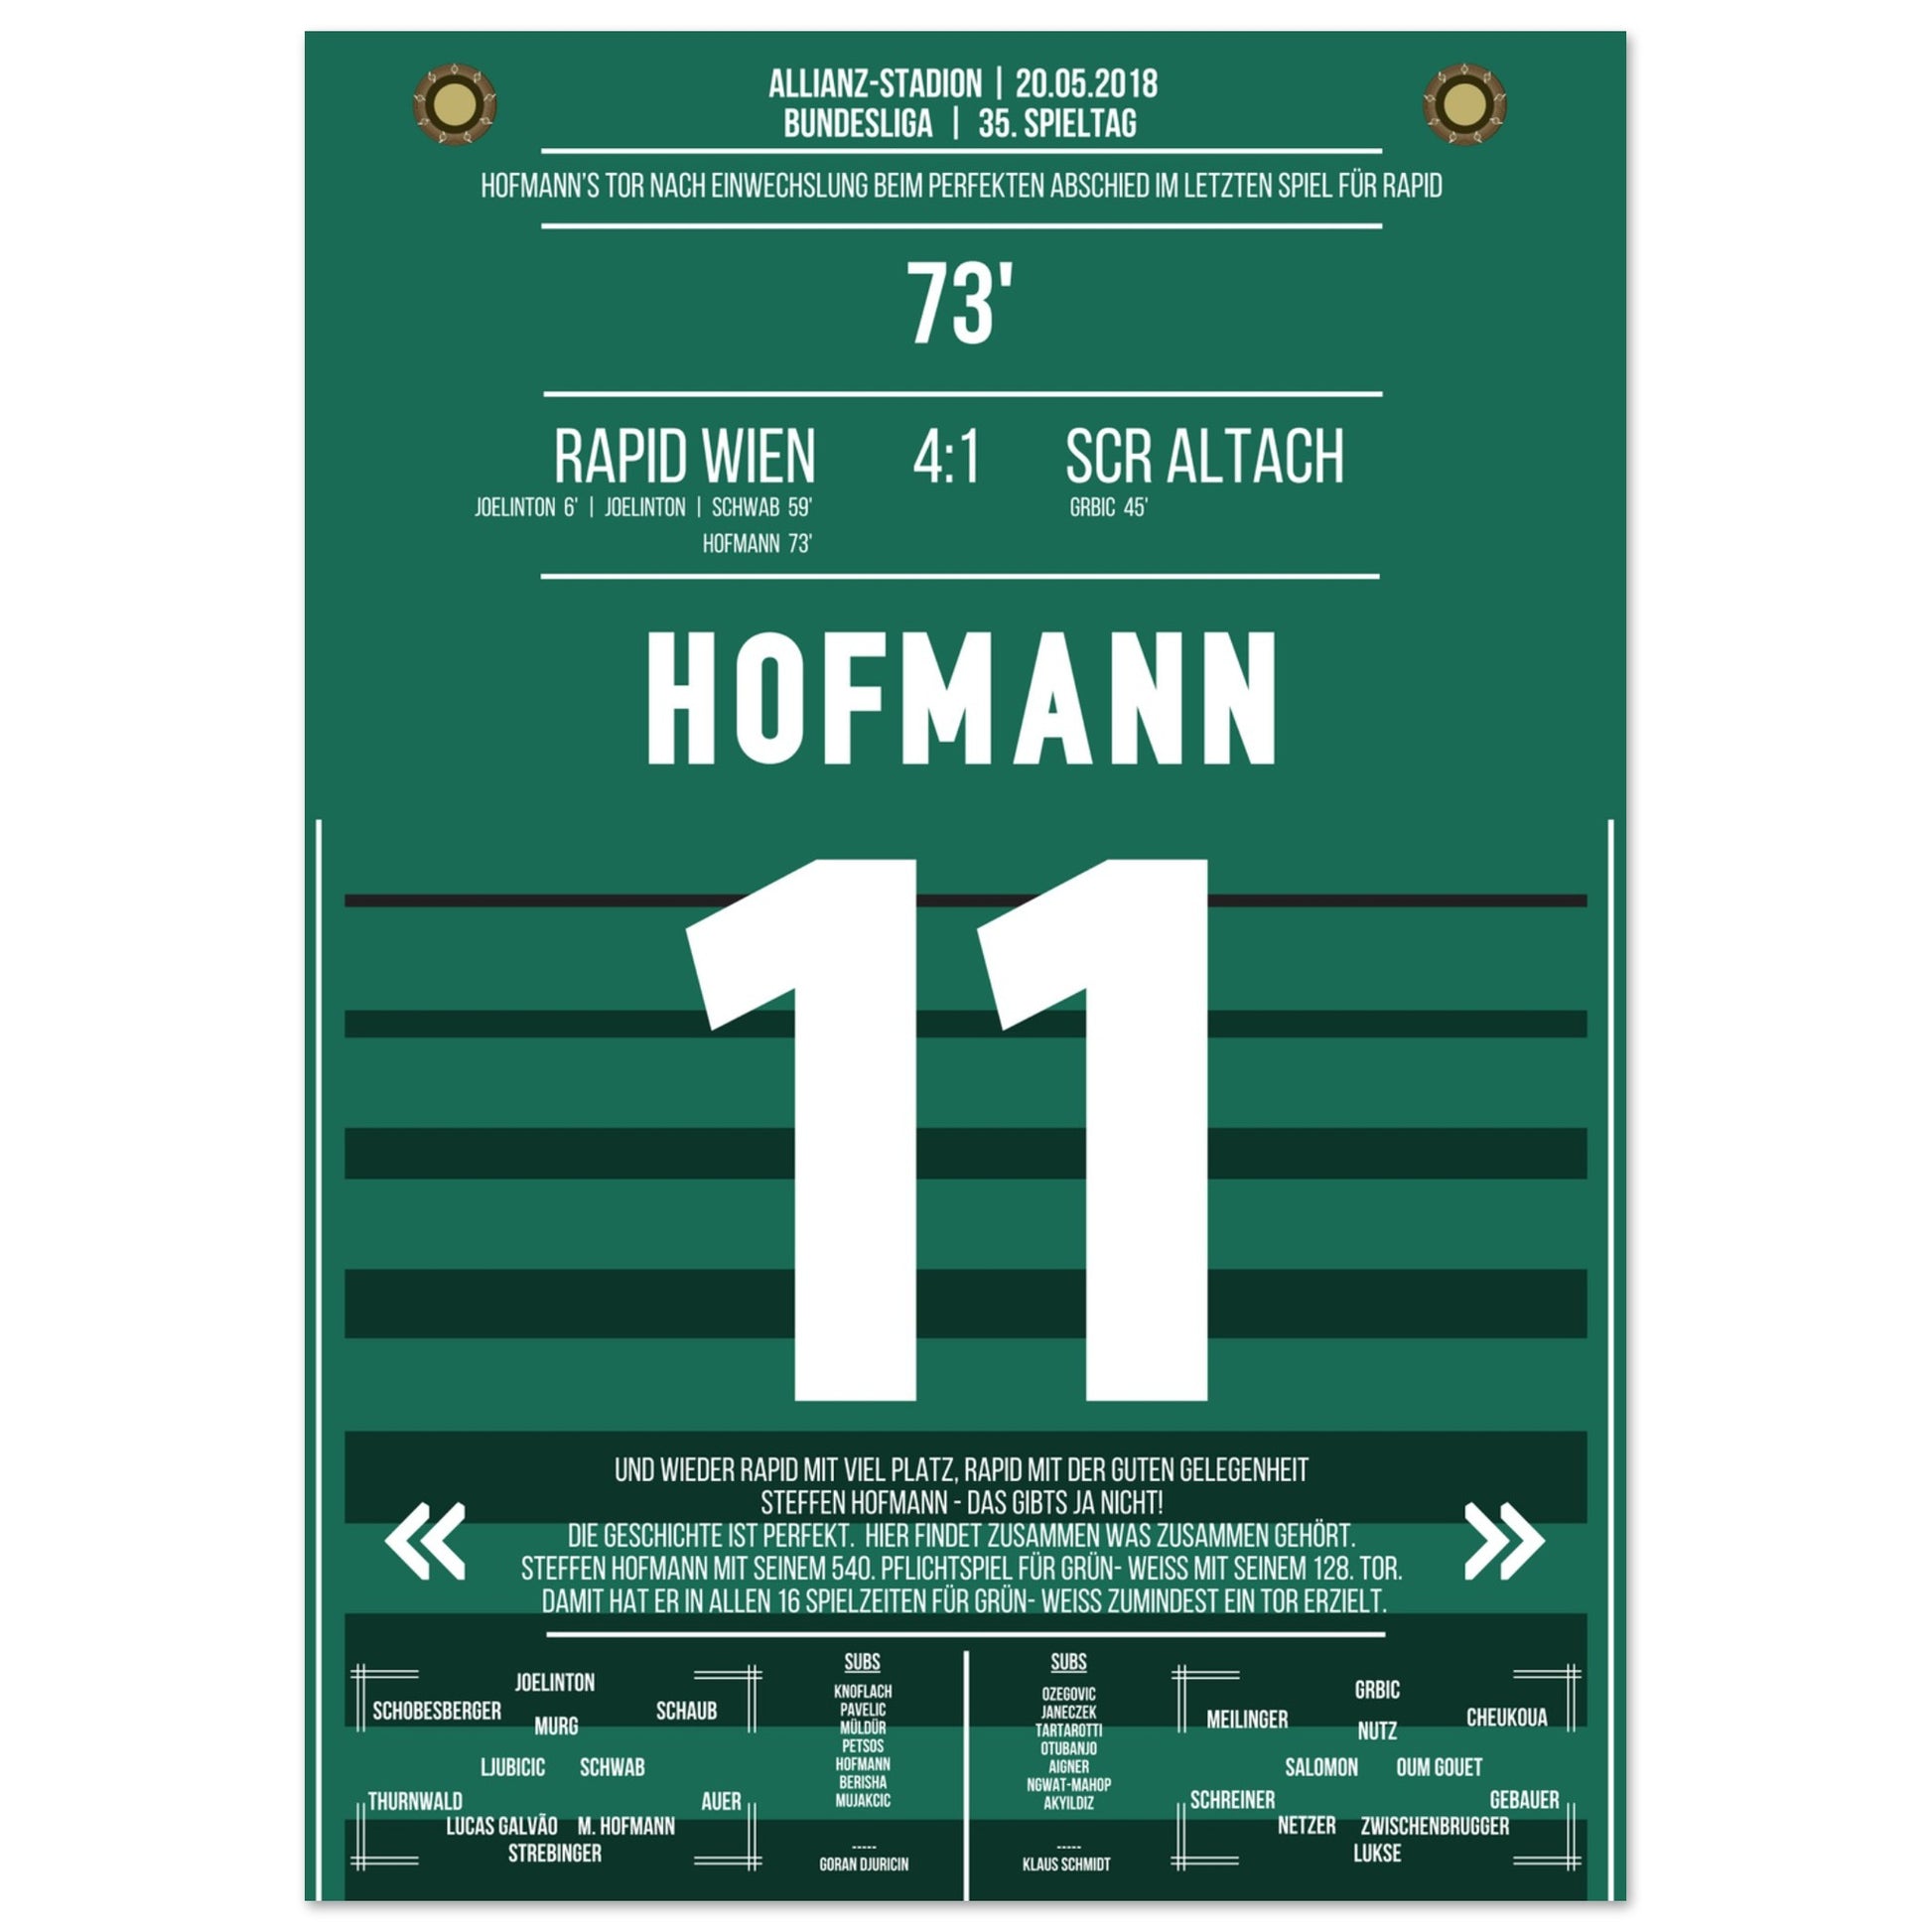 Hofmann's perfekter Abschied im letzten Spiel für Rapid A4-21x29.7-cm-8x12-Ohne-Rahmen